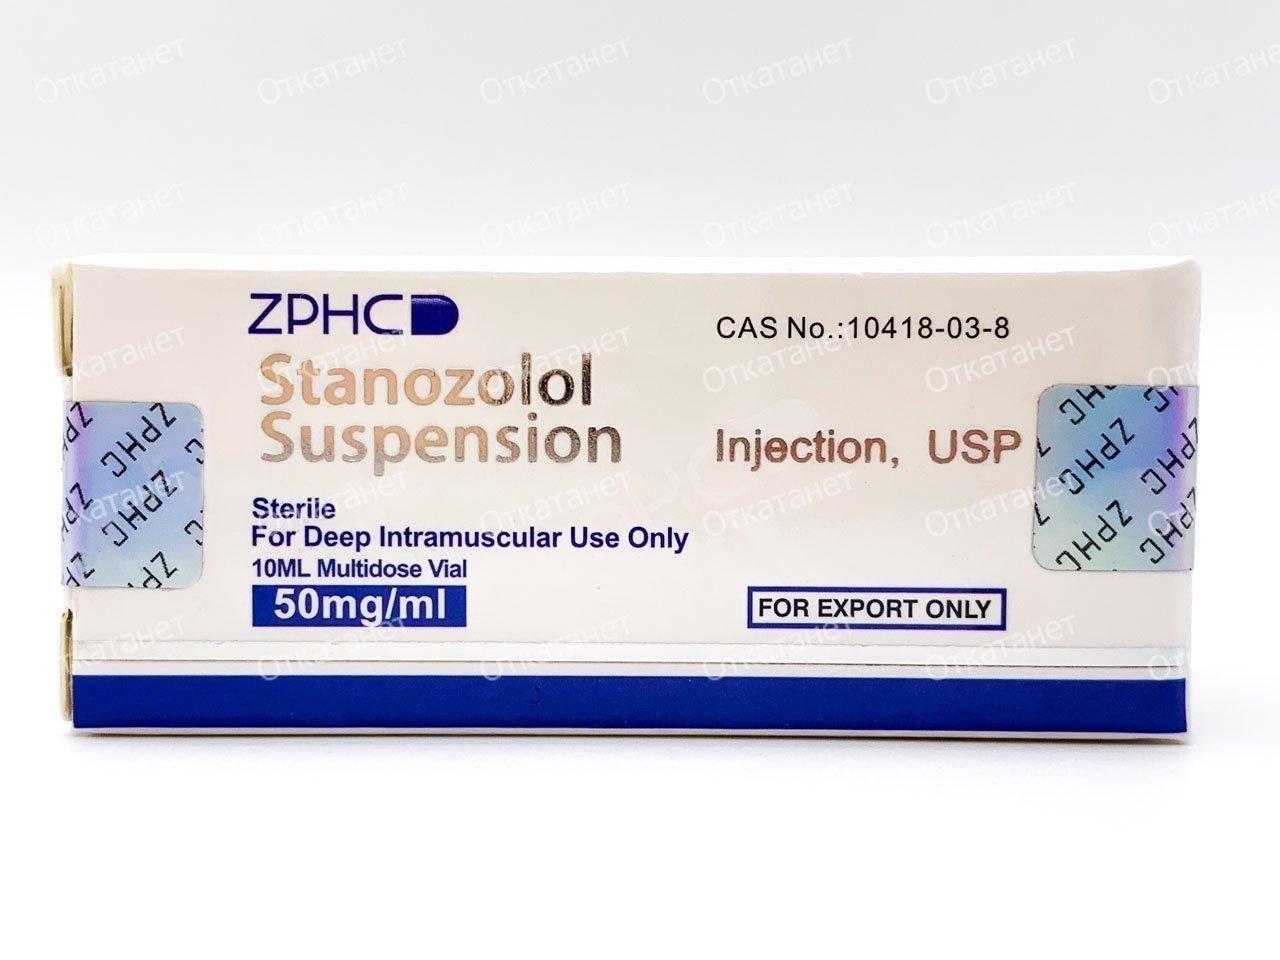 Купить *Stanozolol Suspension ZPHC 10ml|50mg (ZPHC) по низкой цене – отзывы и описание